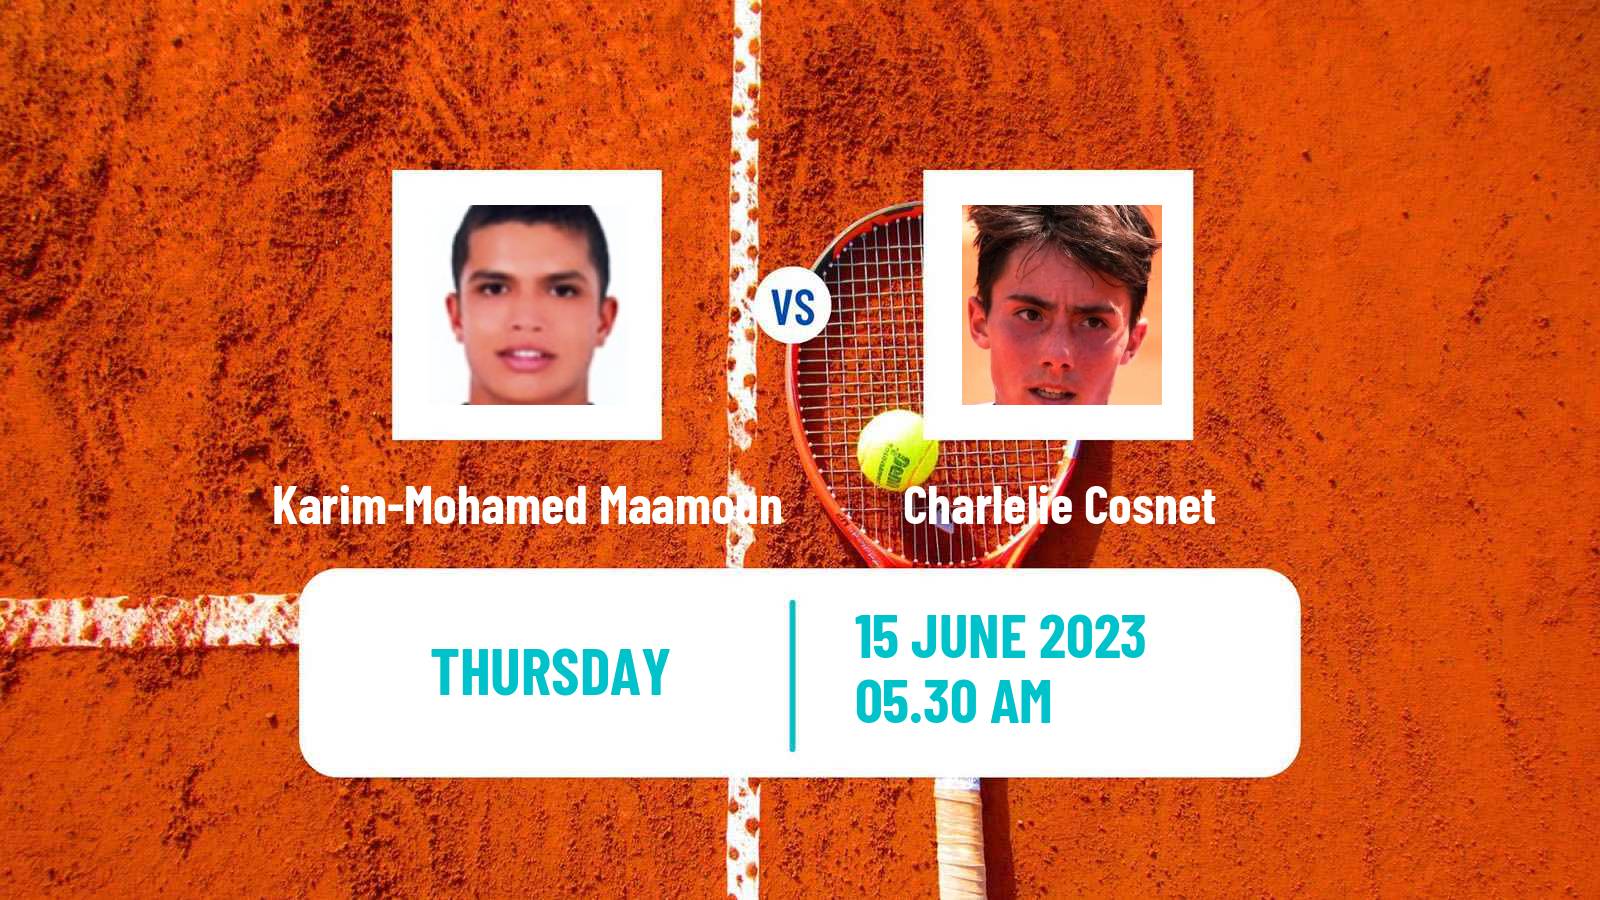 Tennis ITF M15 Rabat Men Karim-Mohamed Maamoun - Charlelie Cosnet